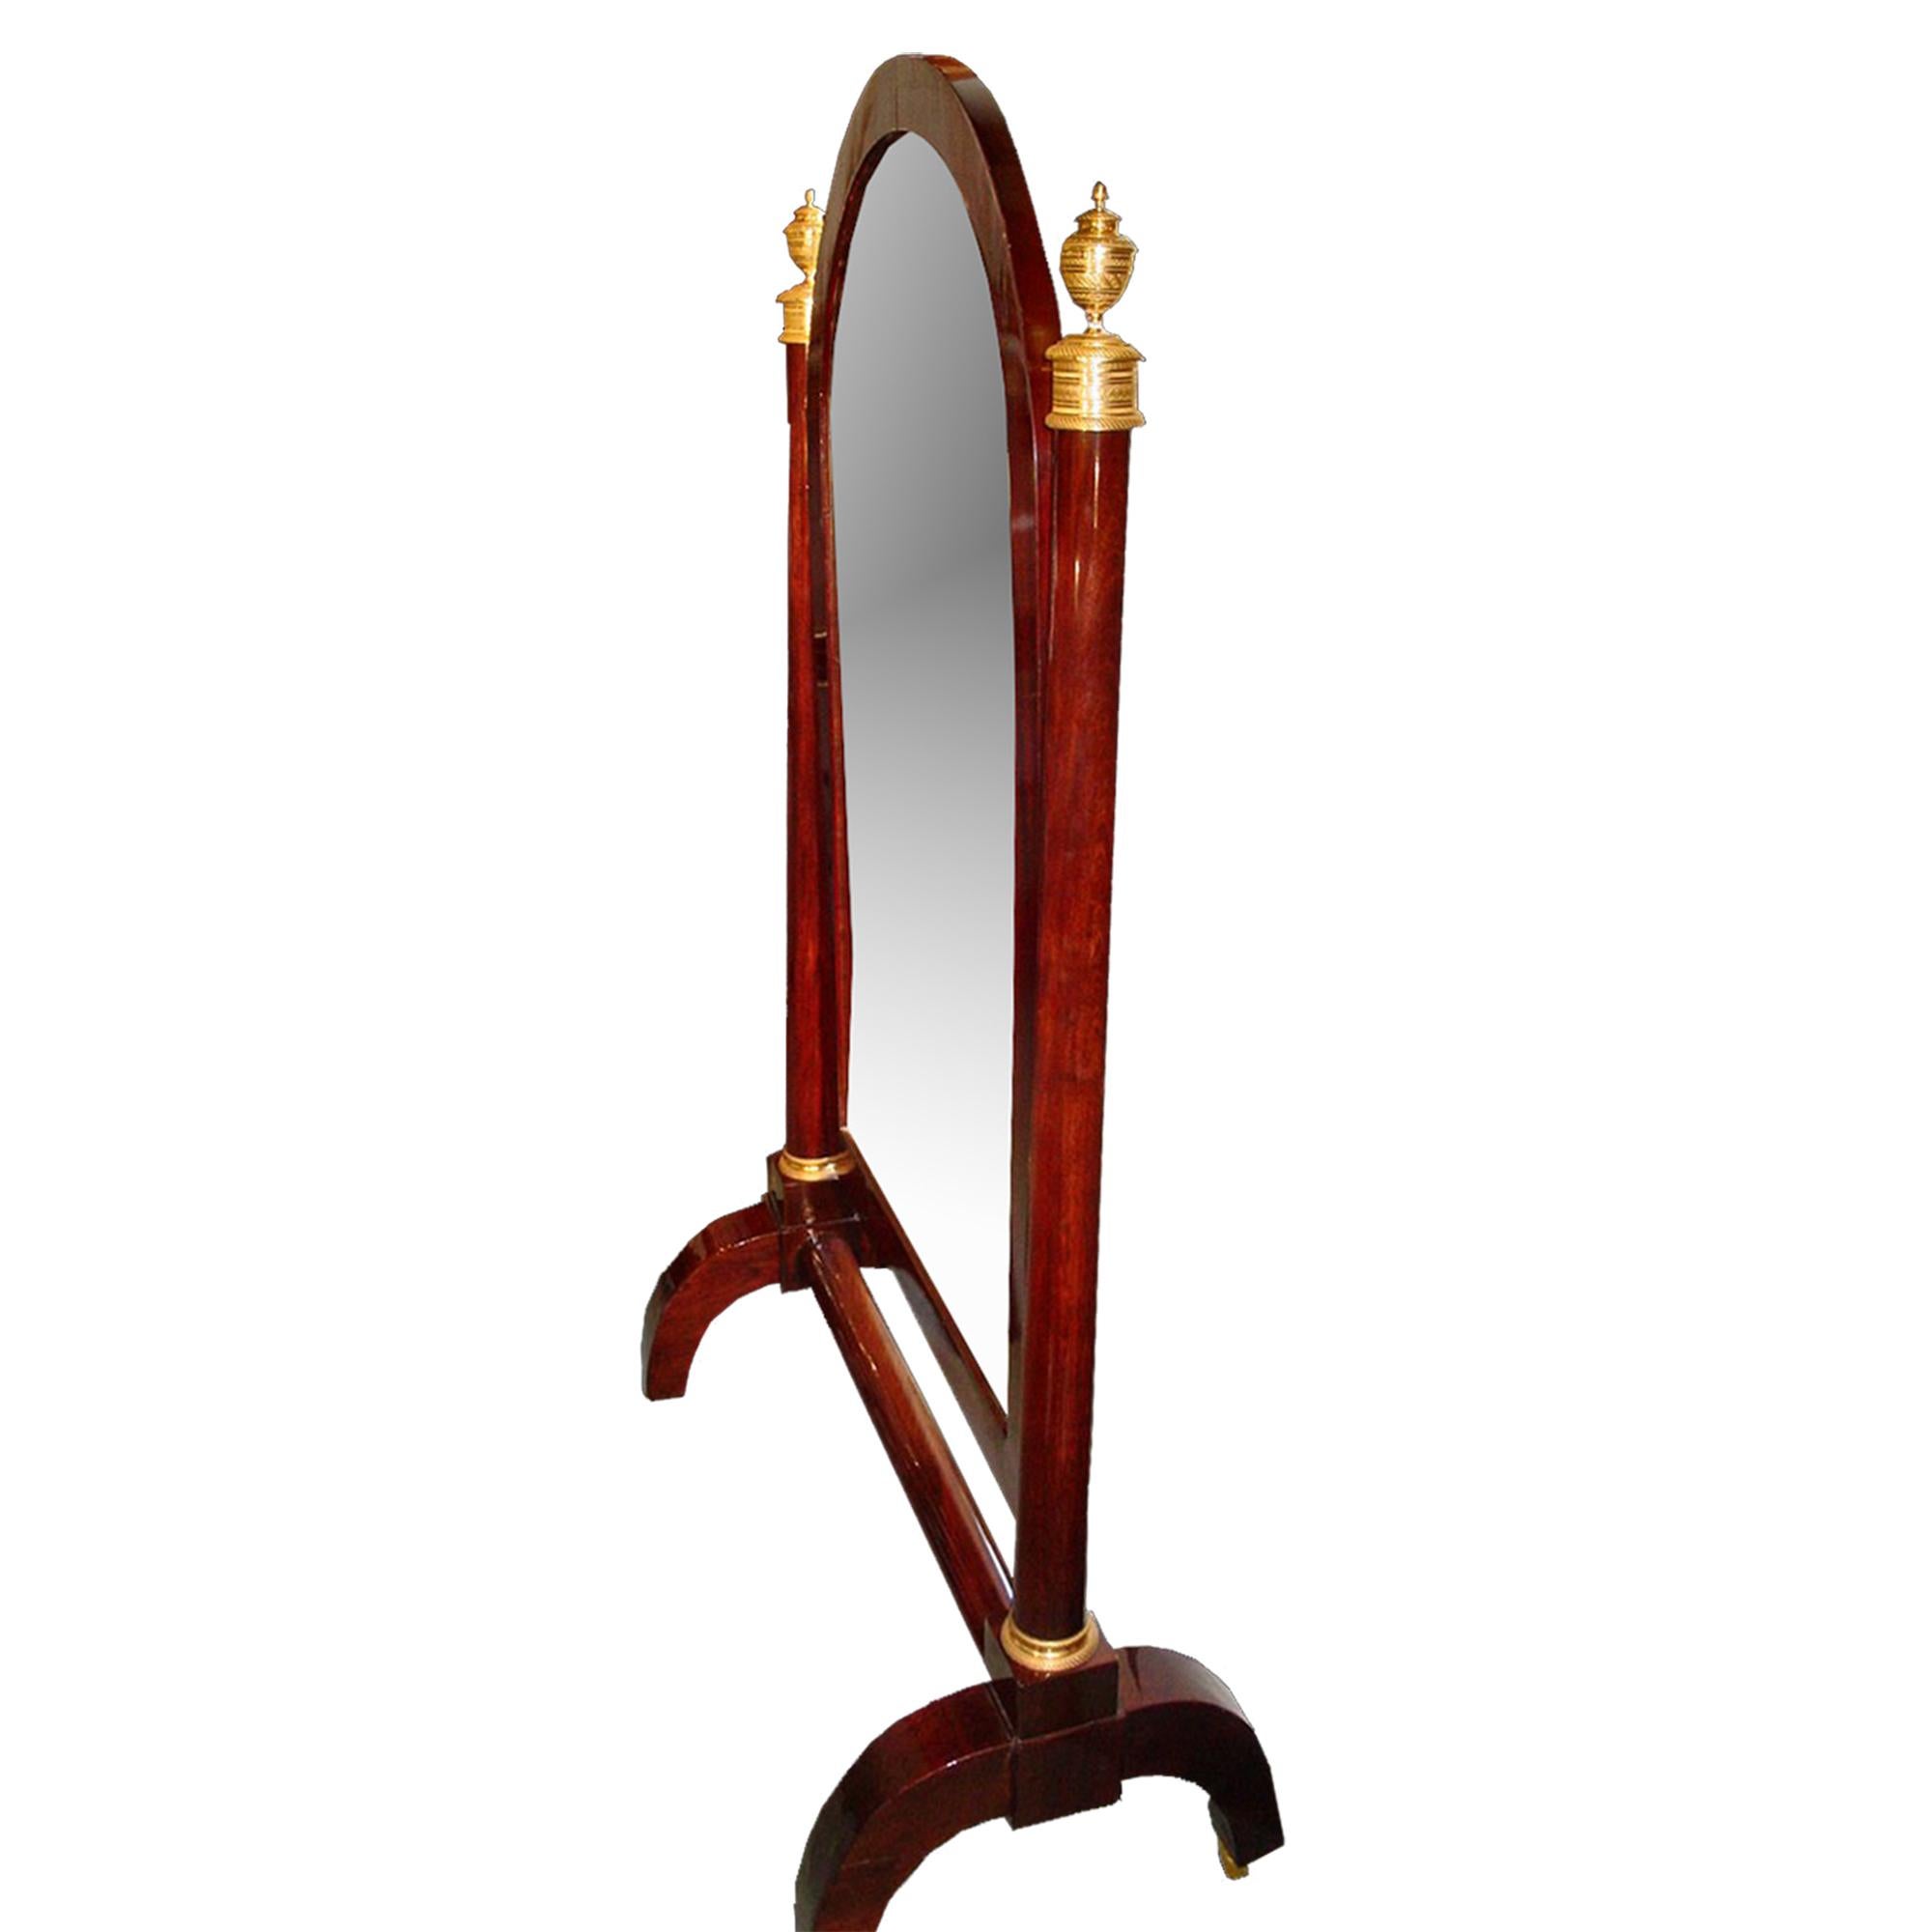 Eine feine Mitte des 19. Jahrhunderts Französisch Neo-Klassik st. Mahagoni Psyche Spiegel. Das Ganze steht auf vier C-förmigen Beinen mit Ormolu-Rollen, die durch eine zylindrische Bahre verbunden sind. Der Spiegel in einem kubanisch furnierten